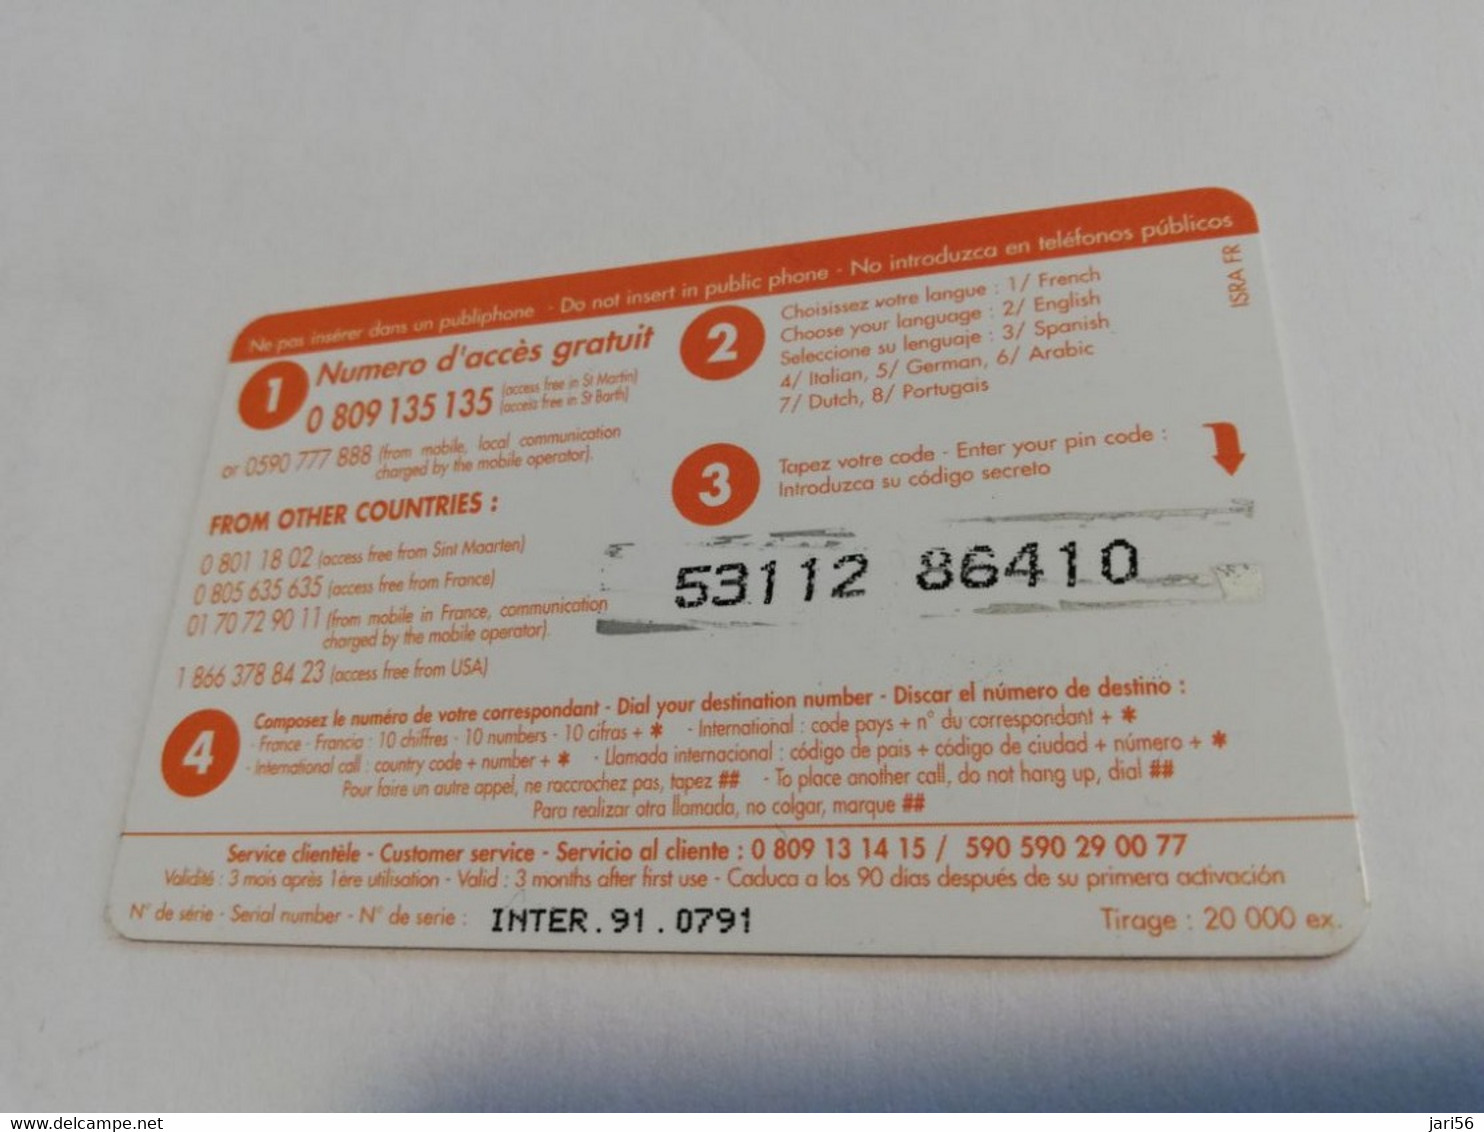 ST MARTIN / INTERCARD  3 EURO  OCTROI DE COLE BAY           NO 091   Fine Used Card    ** 6577 ** - Antillen (Frans)